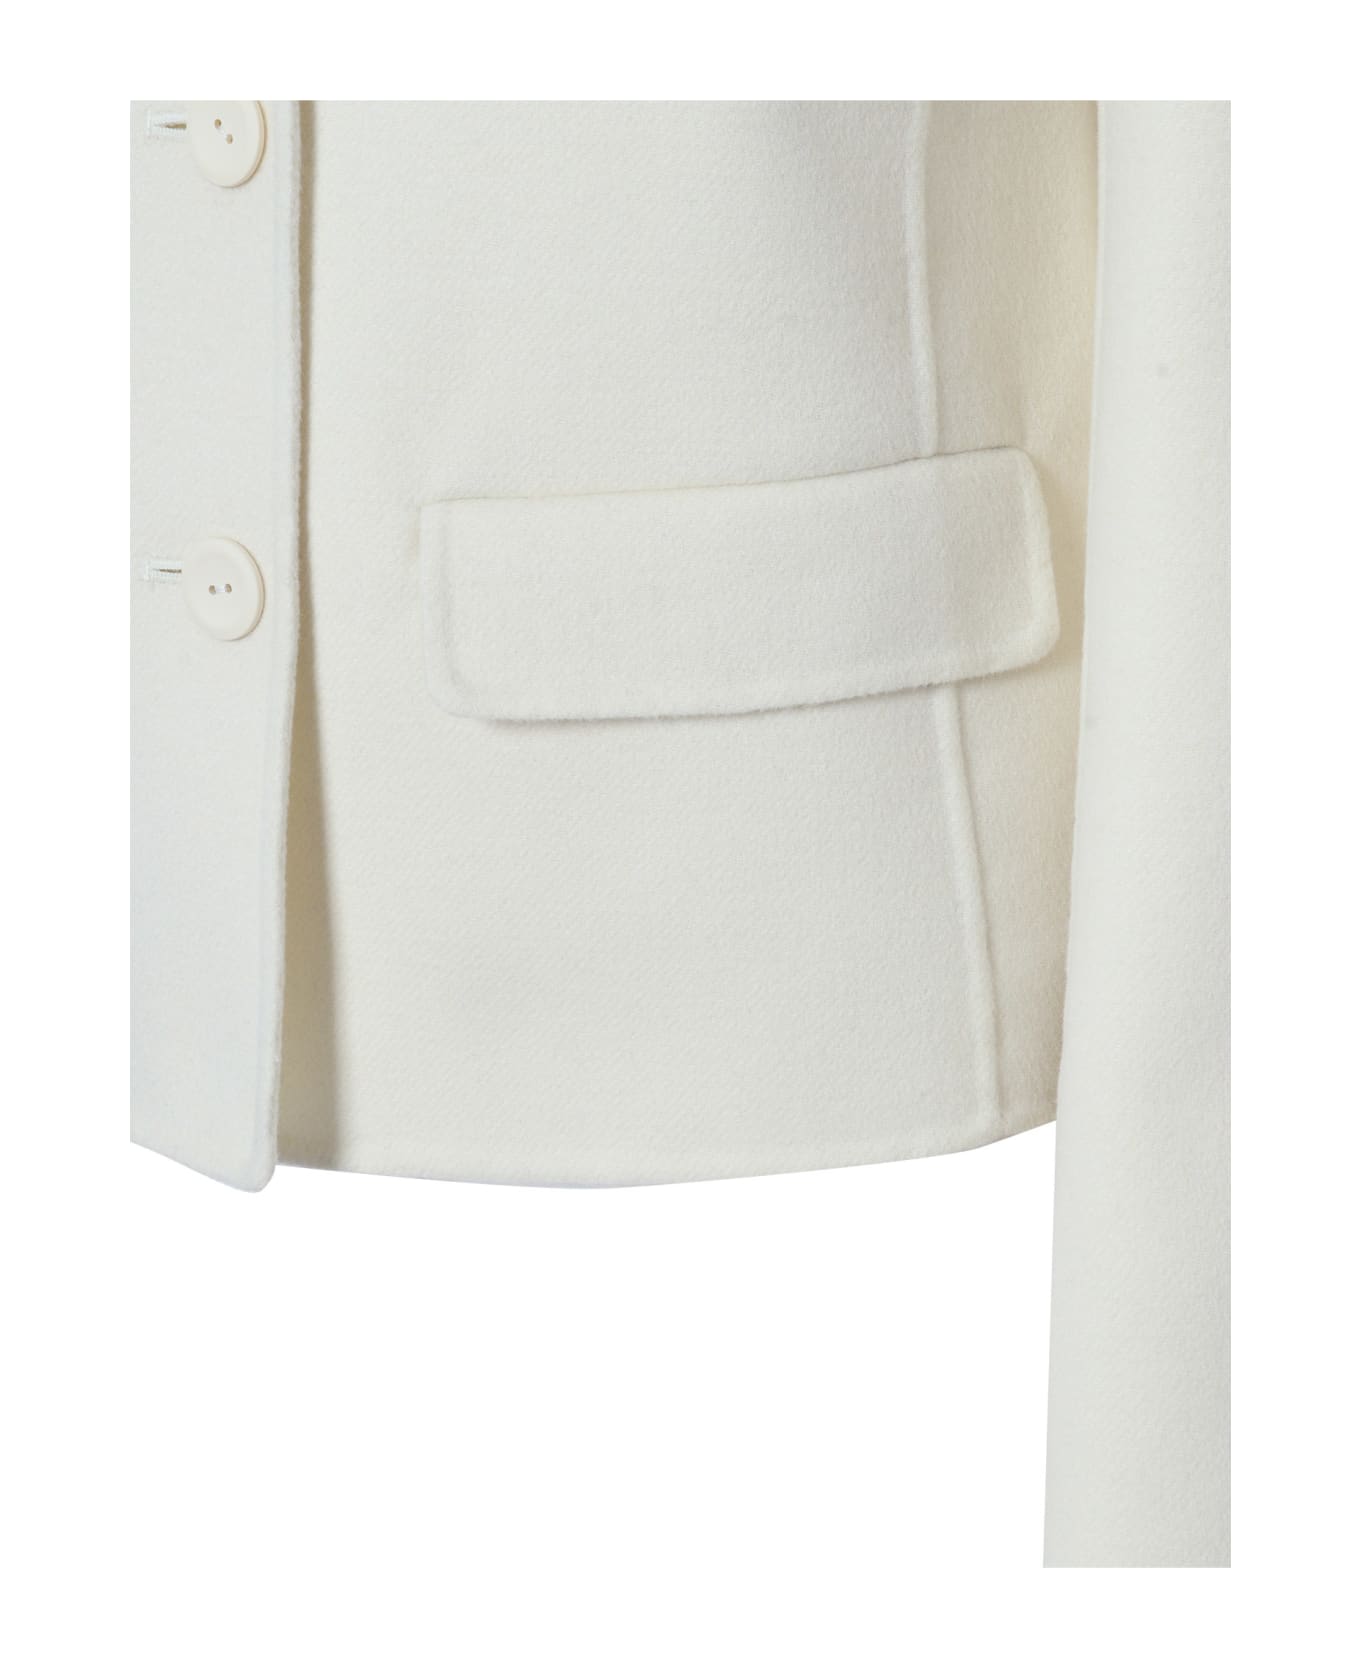 Max Mara Studio White Grecia Jacket - WHITE